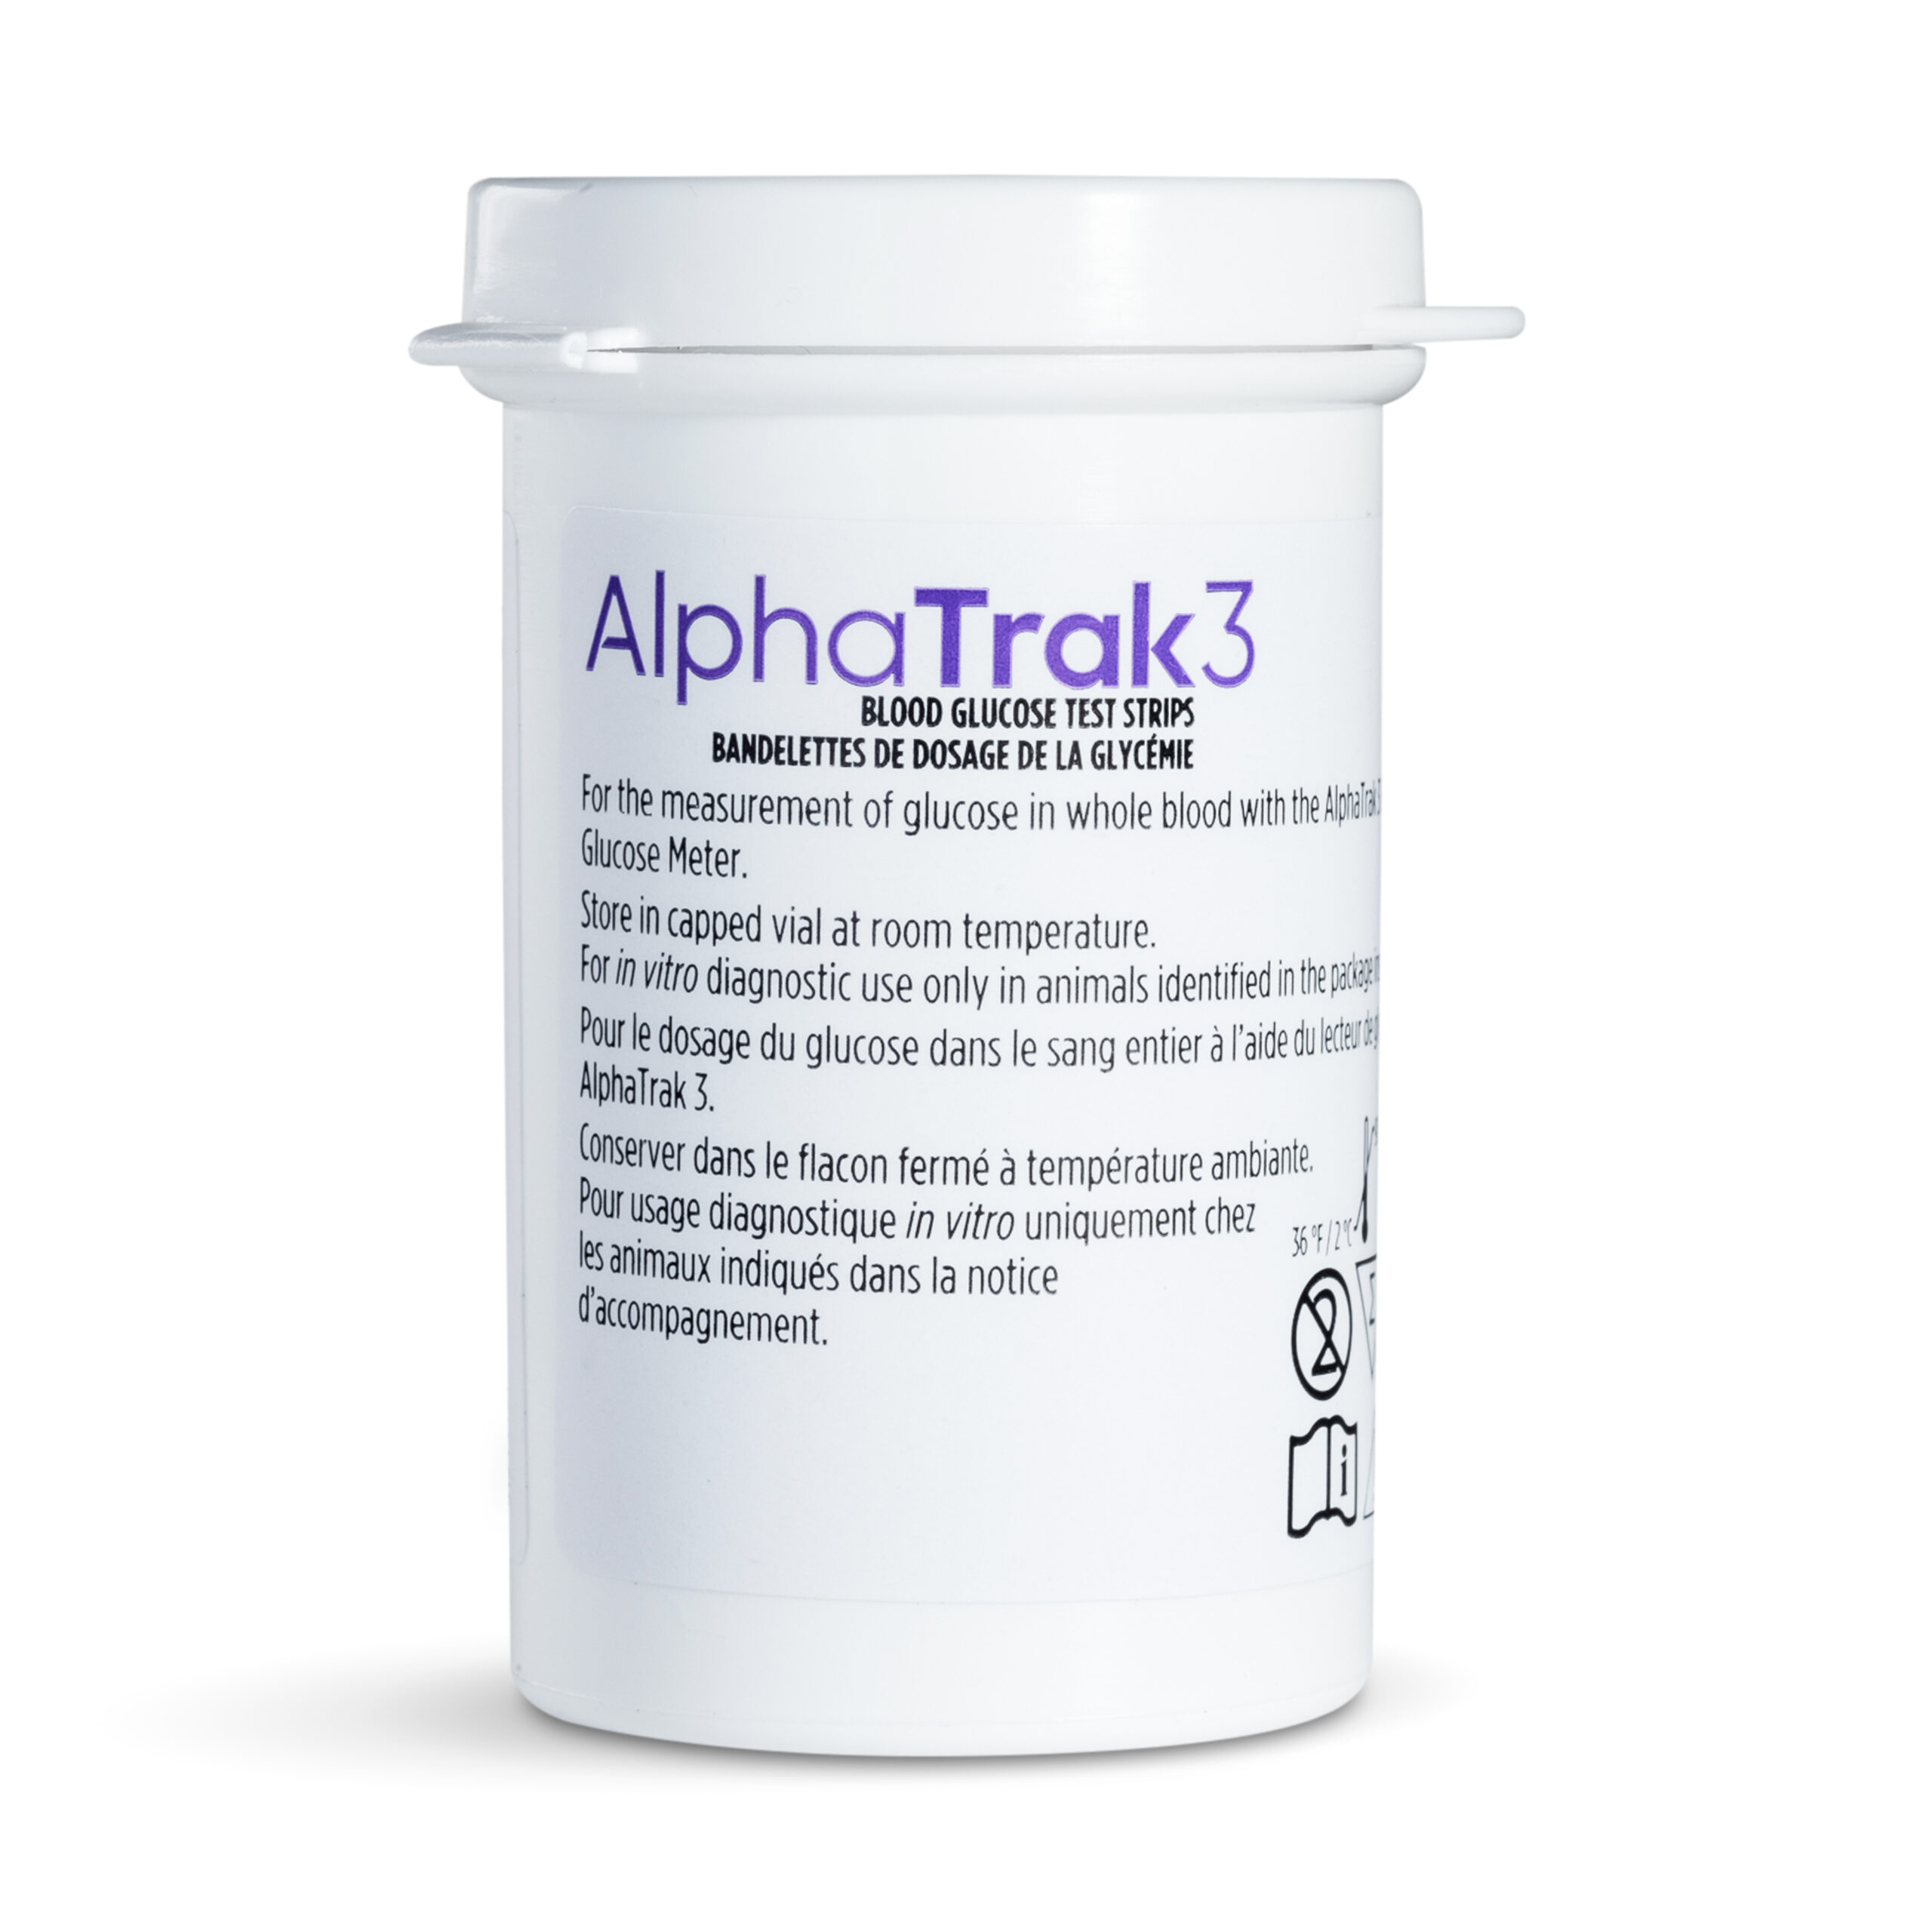 AlphaTrak 3 Test Strips